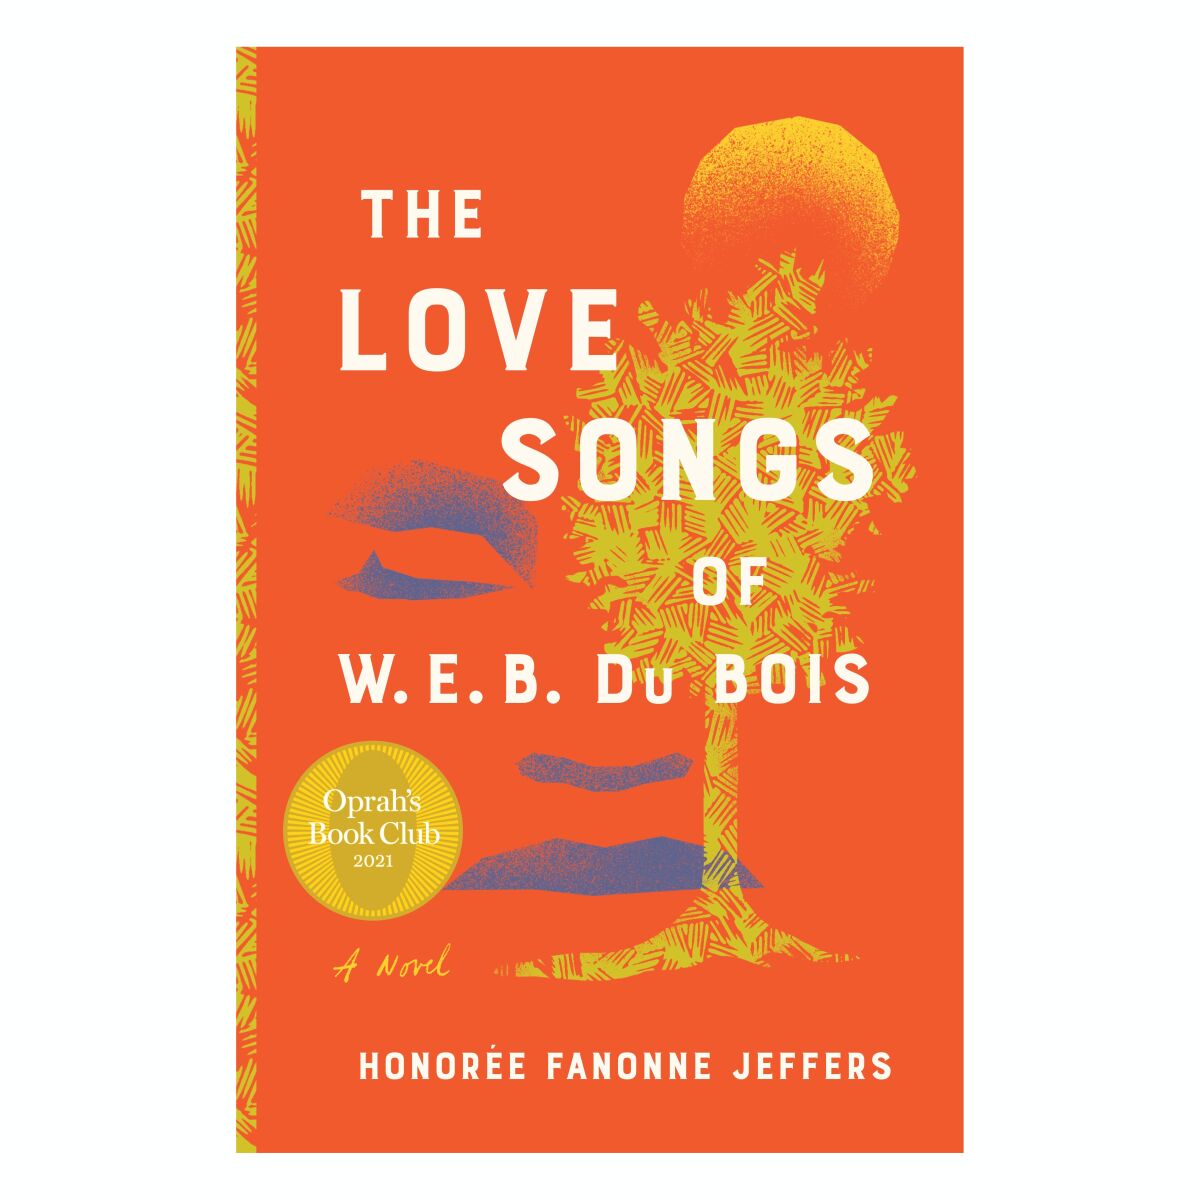 "The Love Songs of W.E.B. Dubois" by Honoree Fanonne Jeffers.